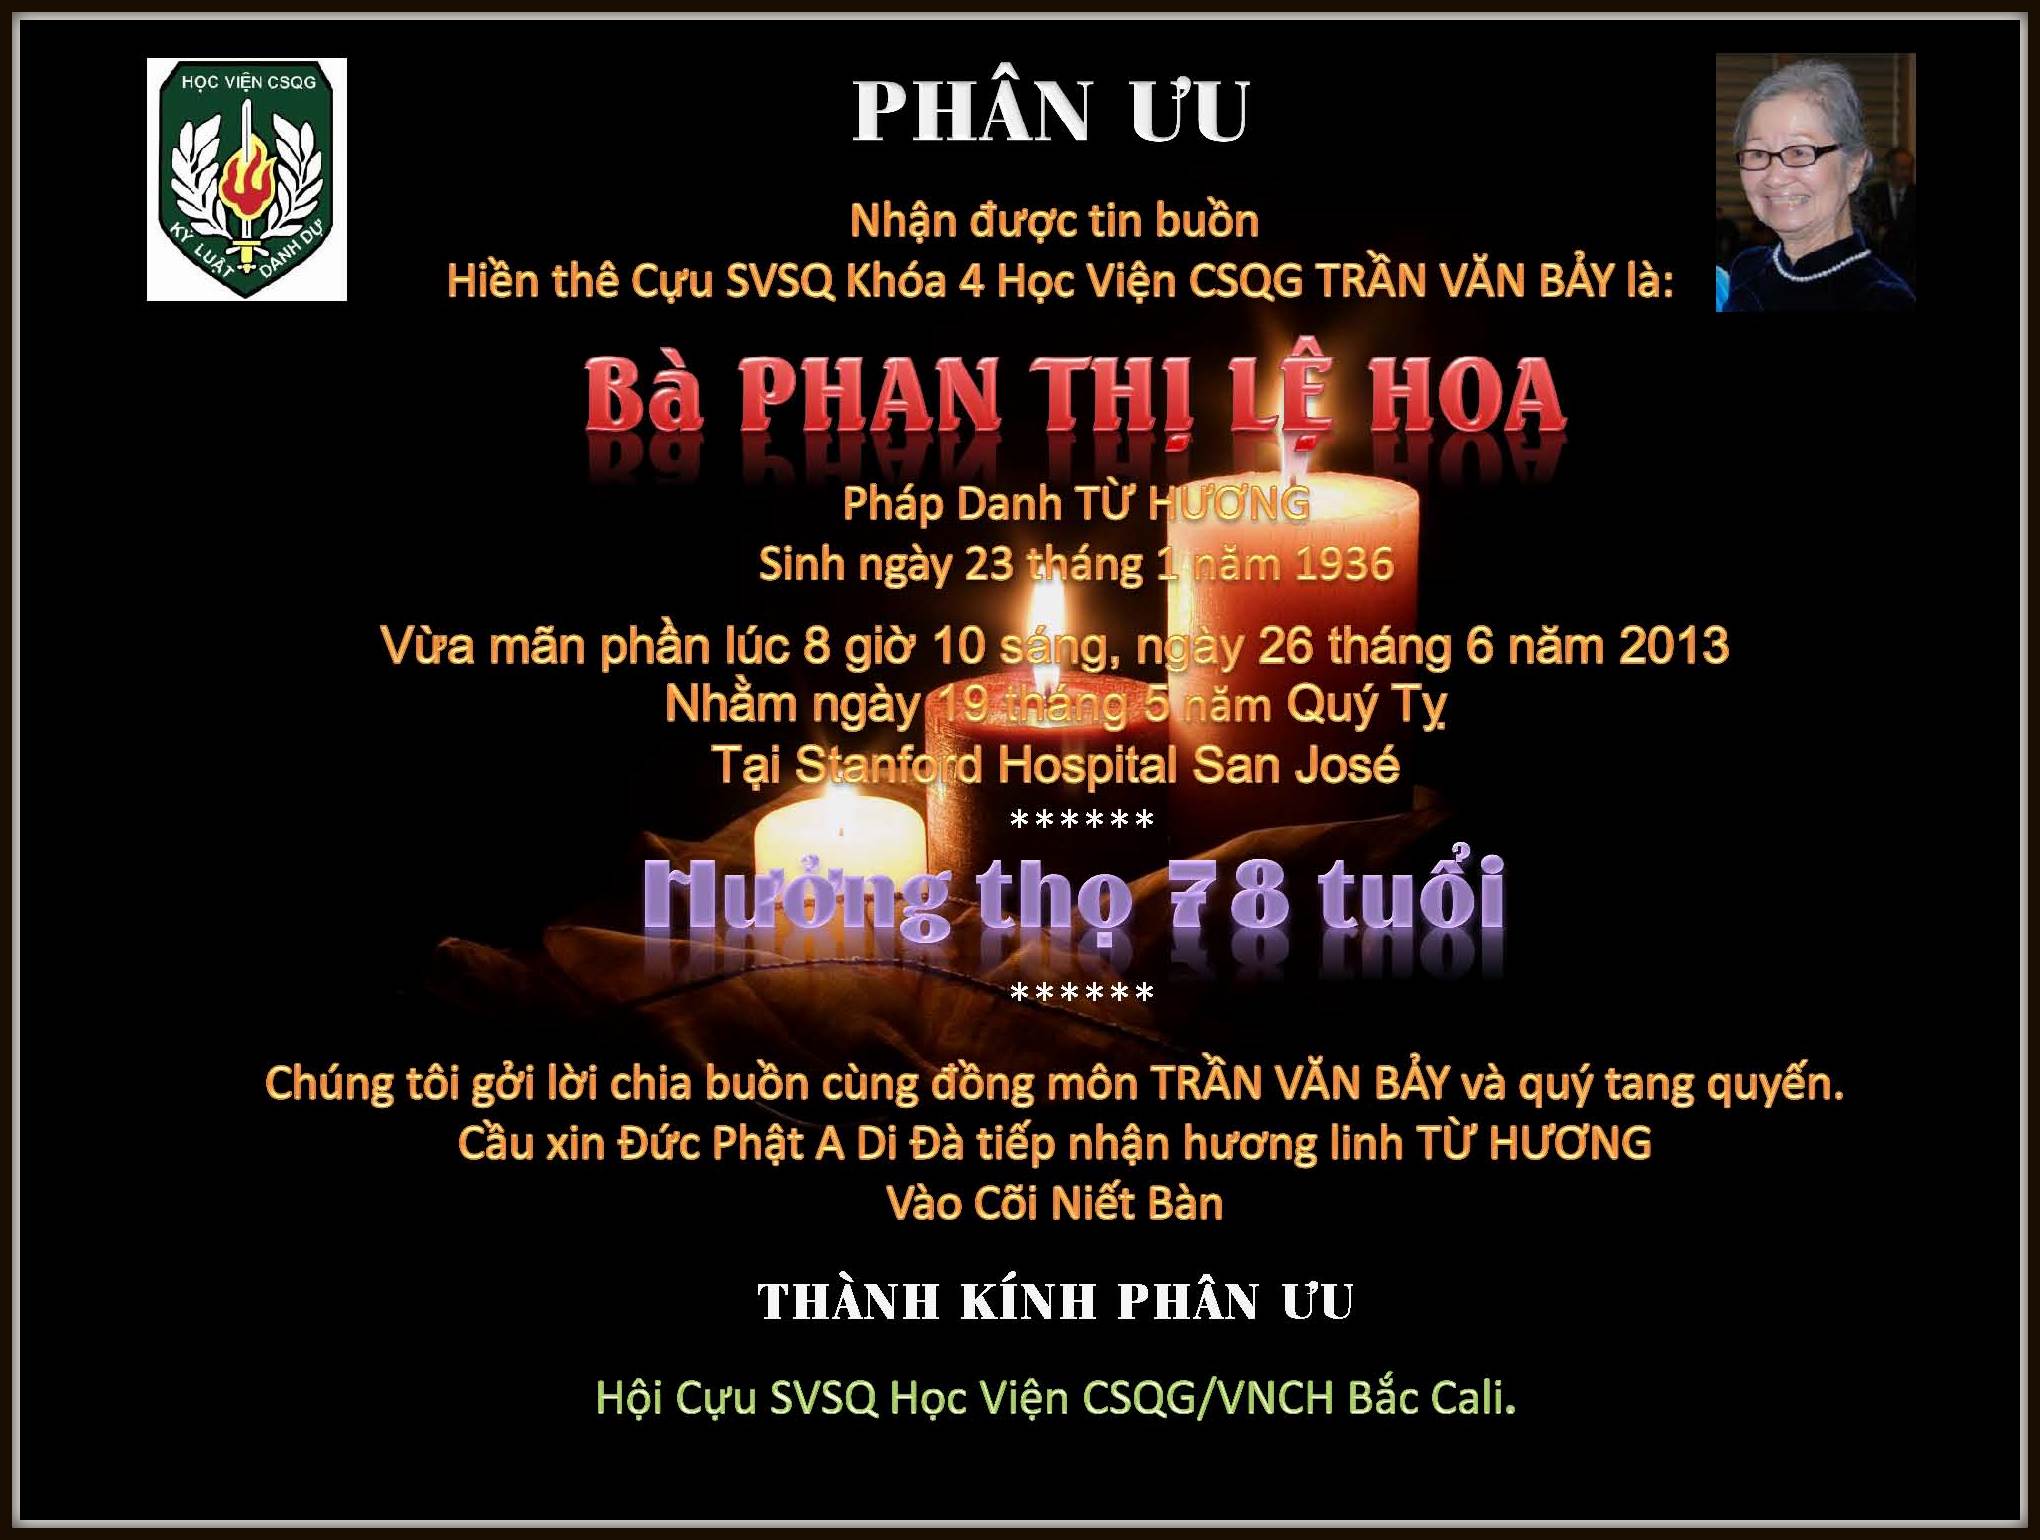 Phan Uu_LeHoa